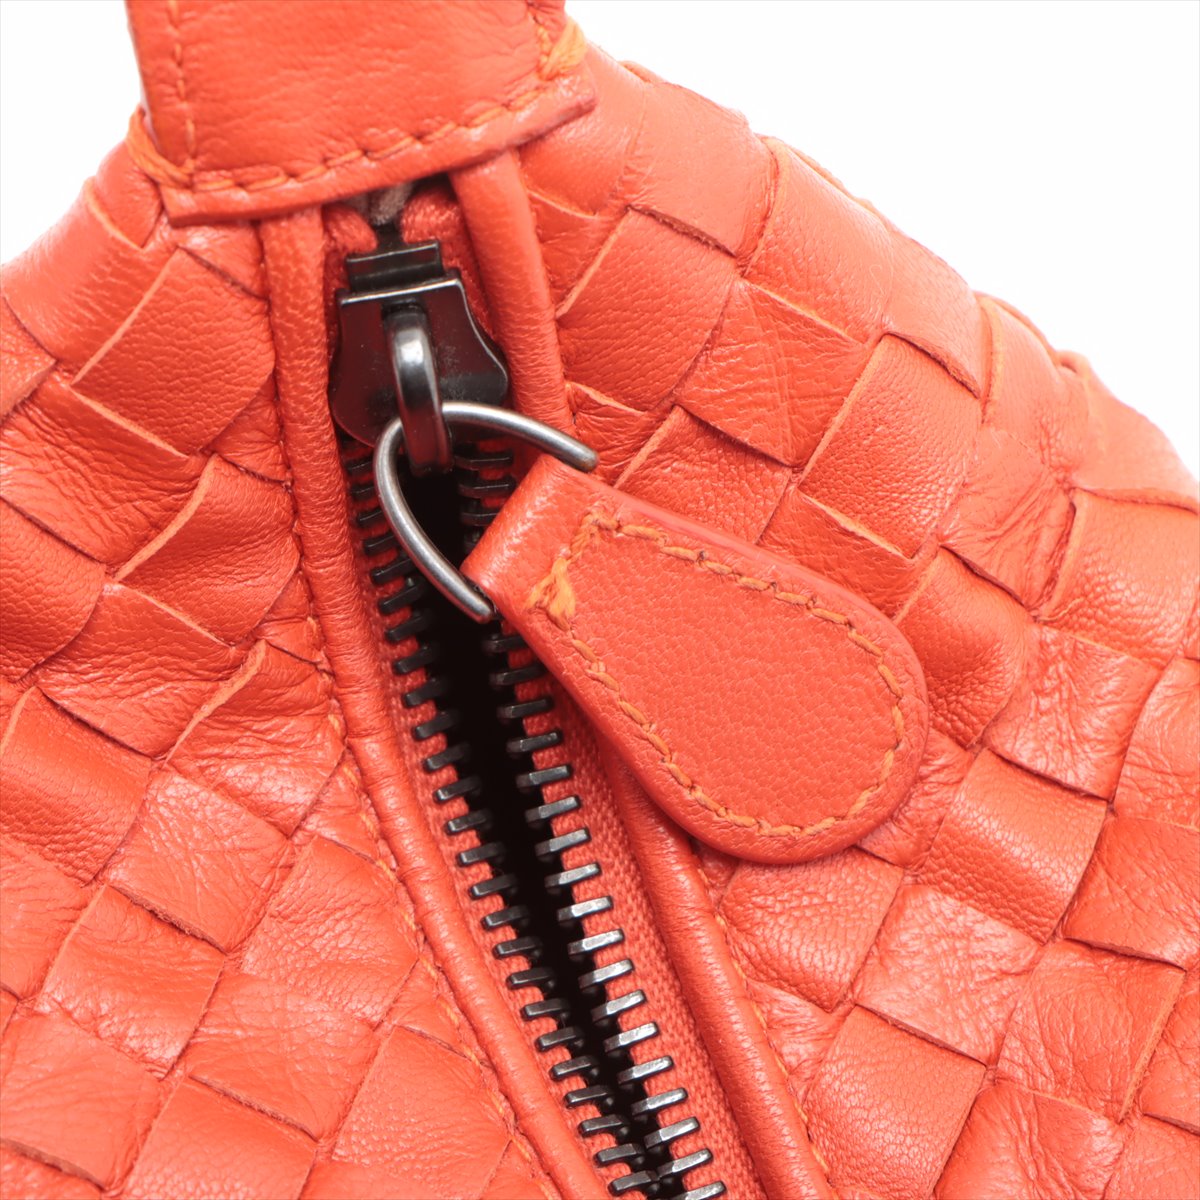 Bottega Veneta Intrecciato Leather Handbag Red 114087